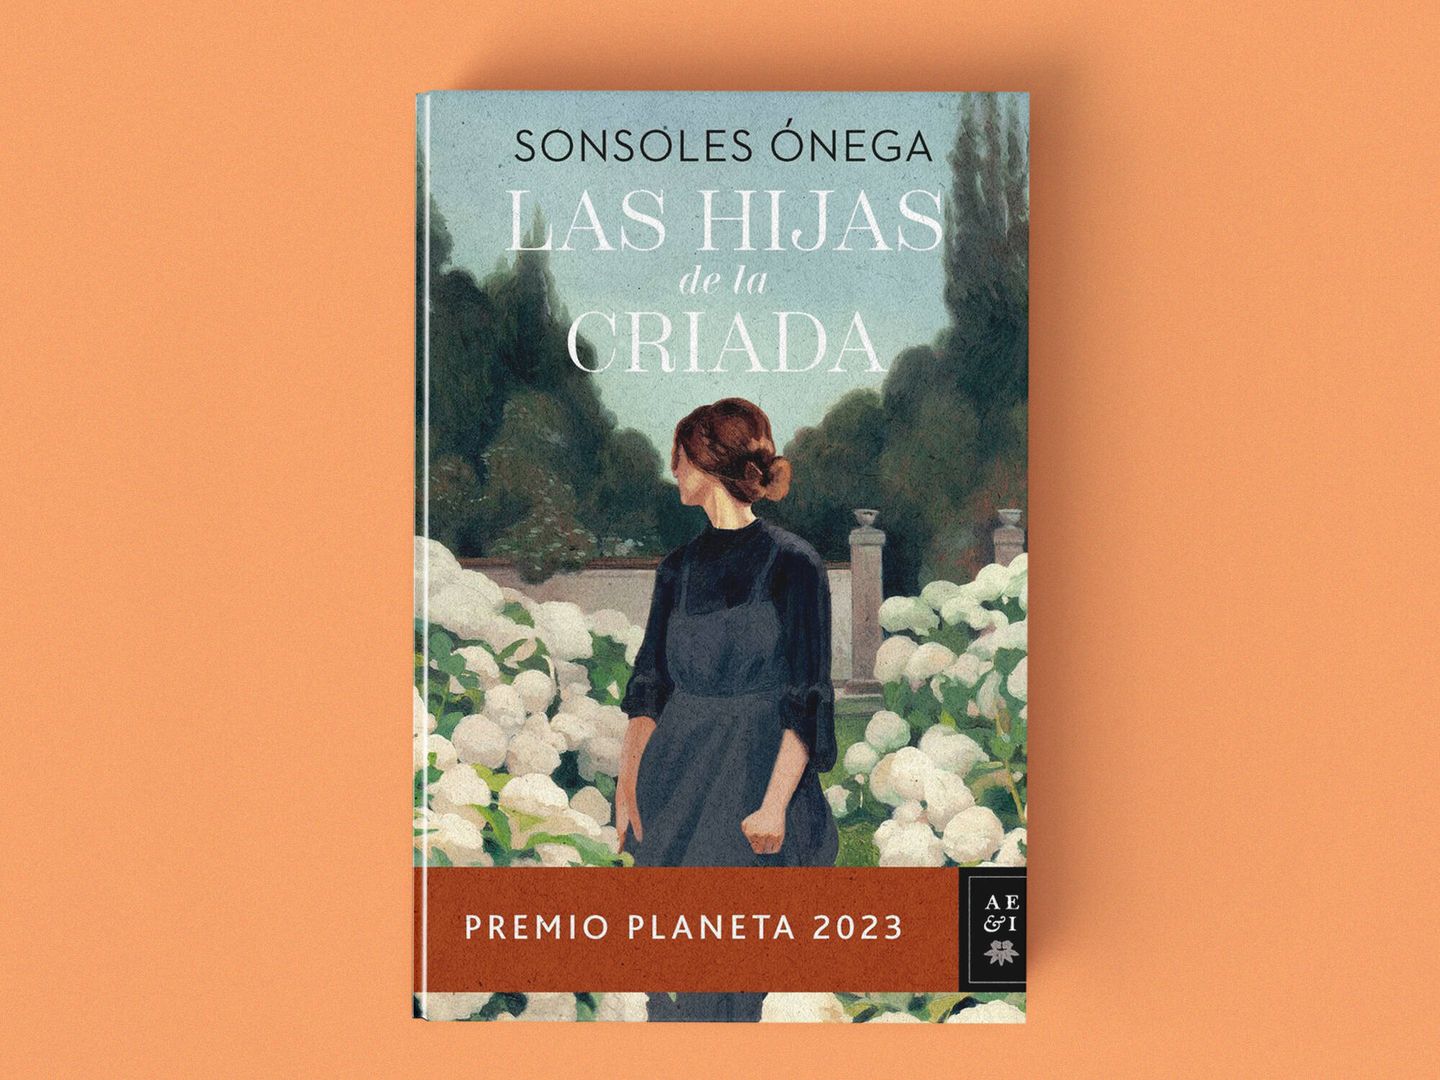 'Las hijas de la criada' de Sonsoles Ónega.